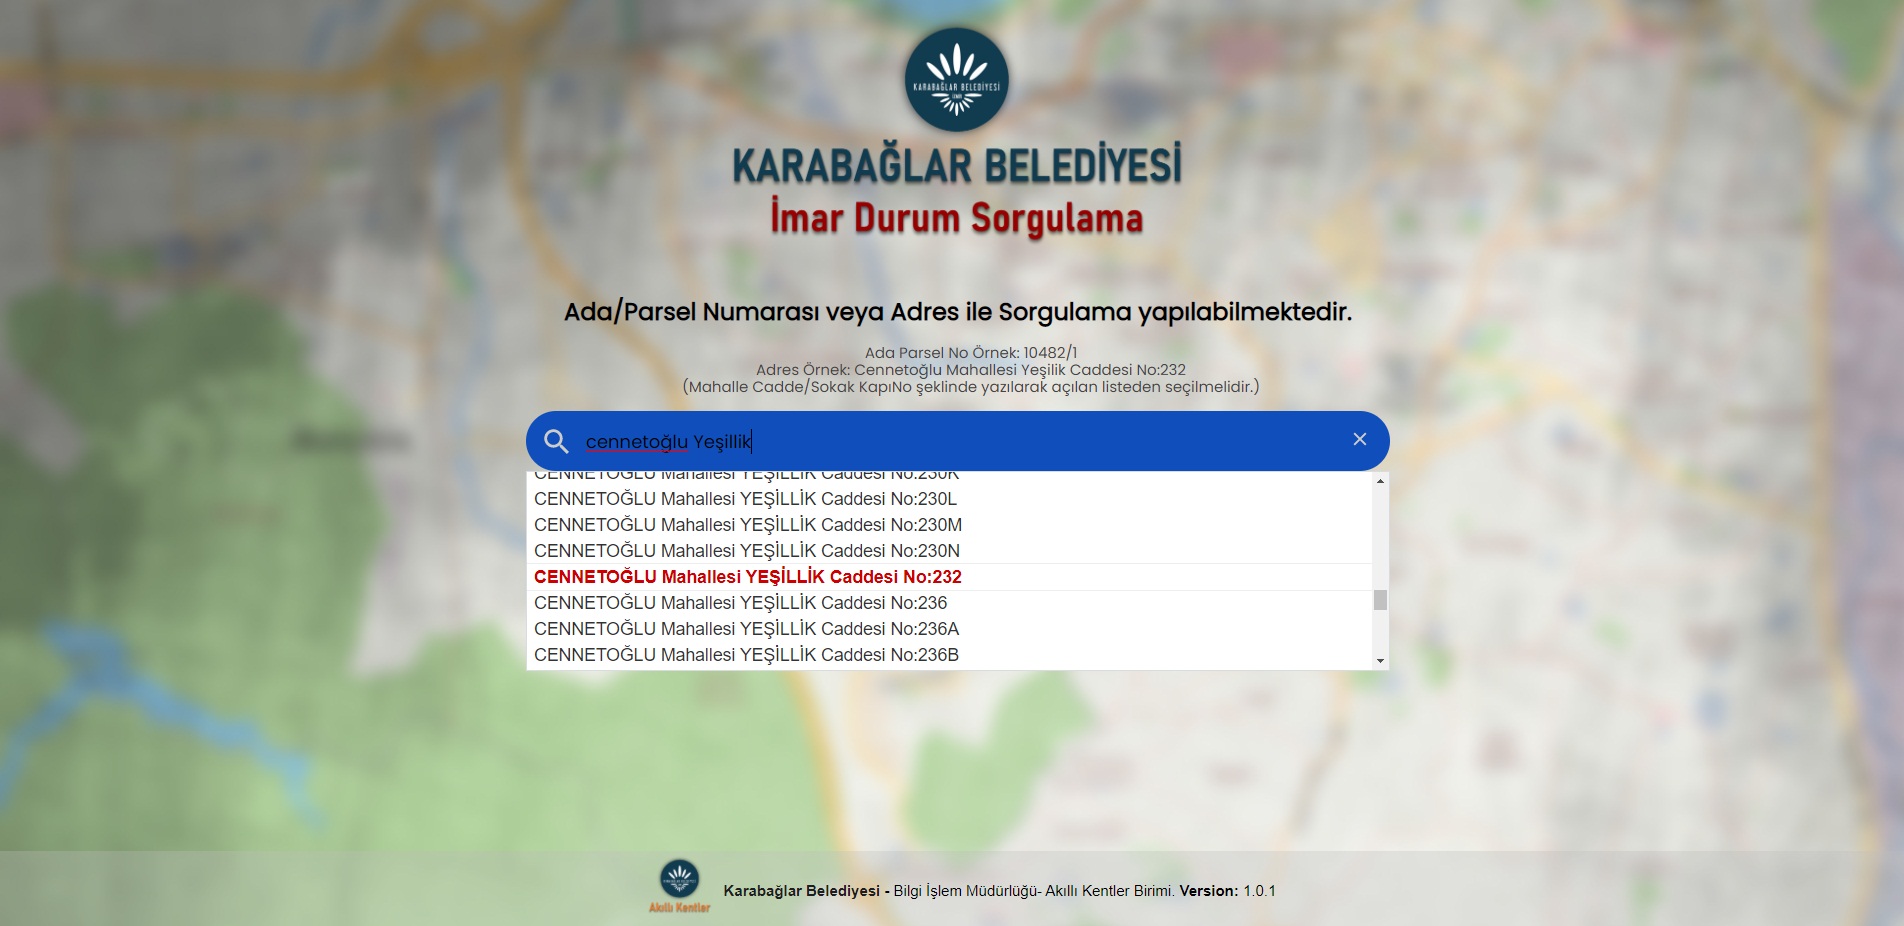 Karabağlar Belediyesi’nin dijital altyapı atağı sürüyor.